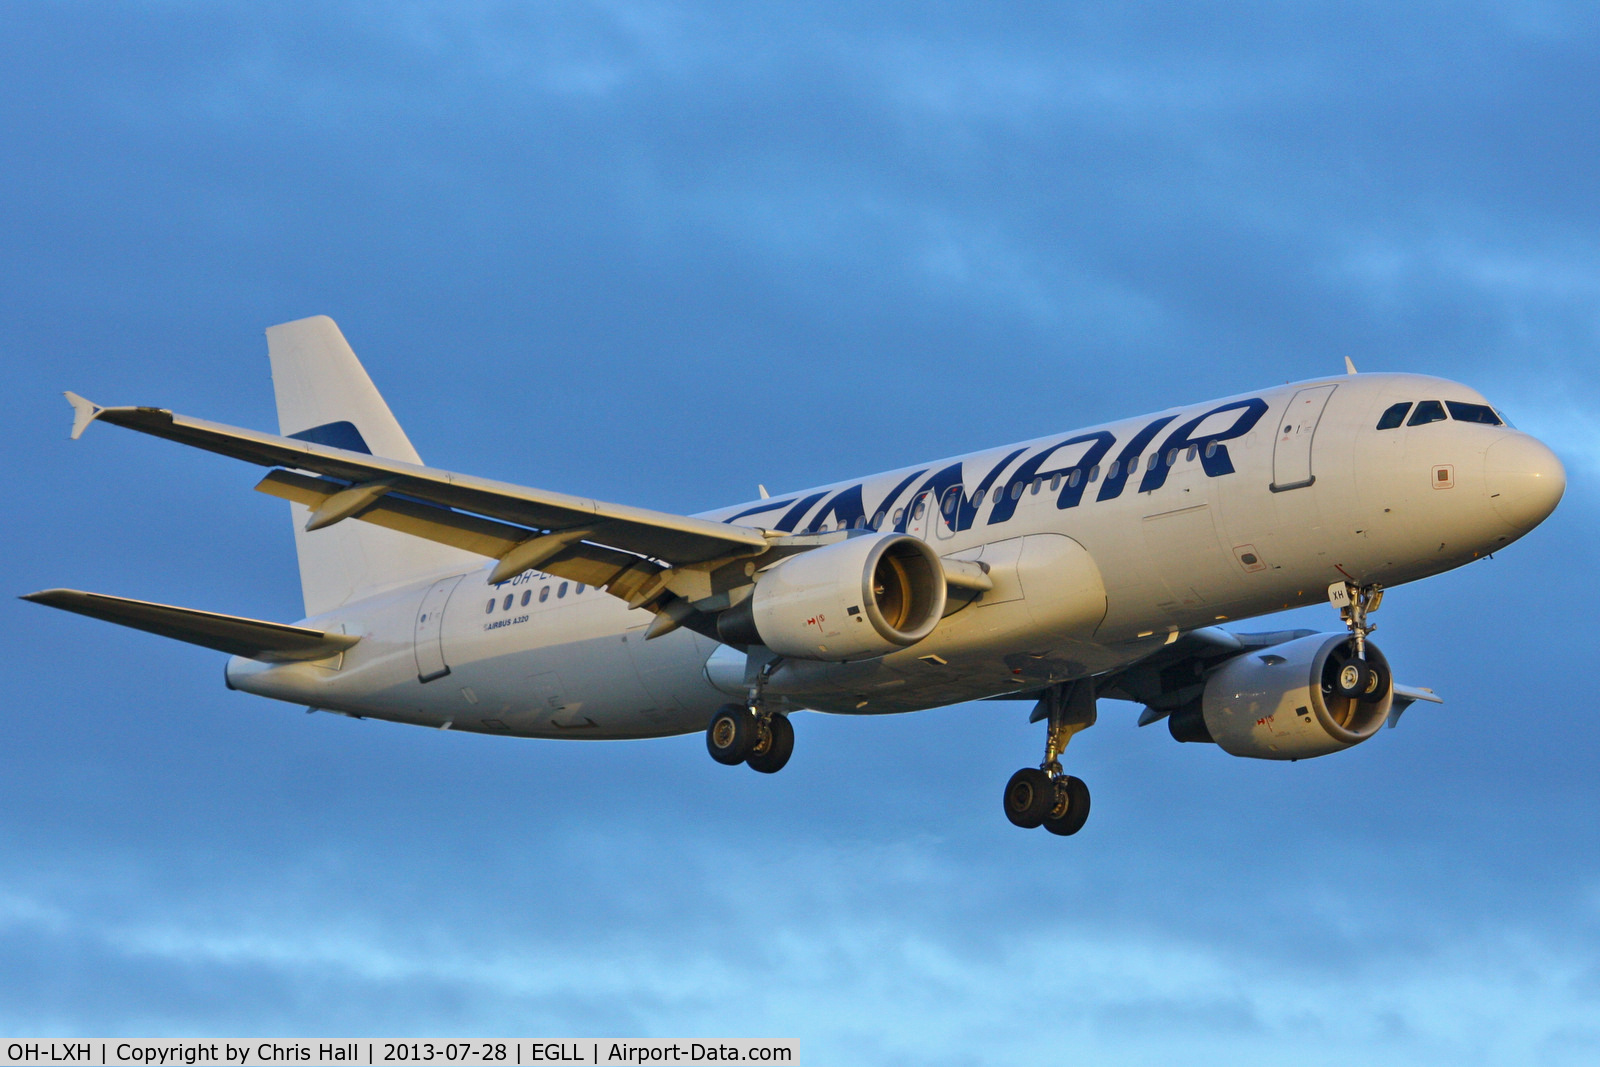 OH-LXH, 2002 Airbus A320-214 C/N 1913, Finnair